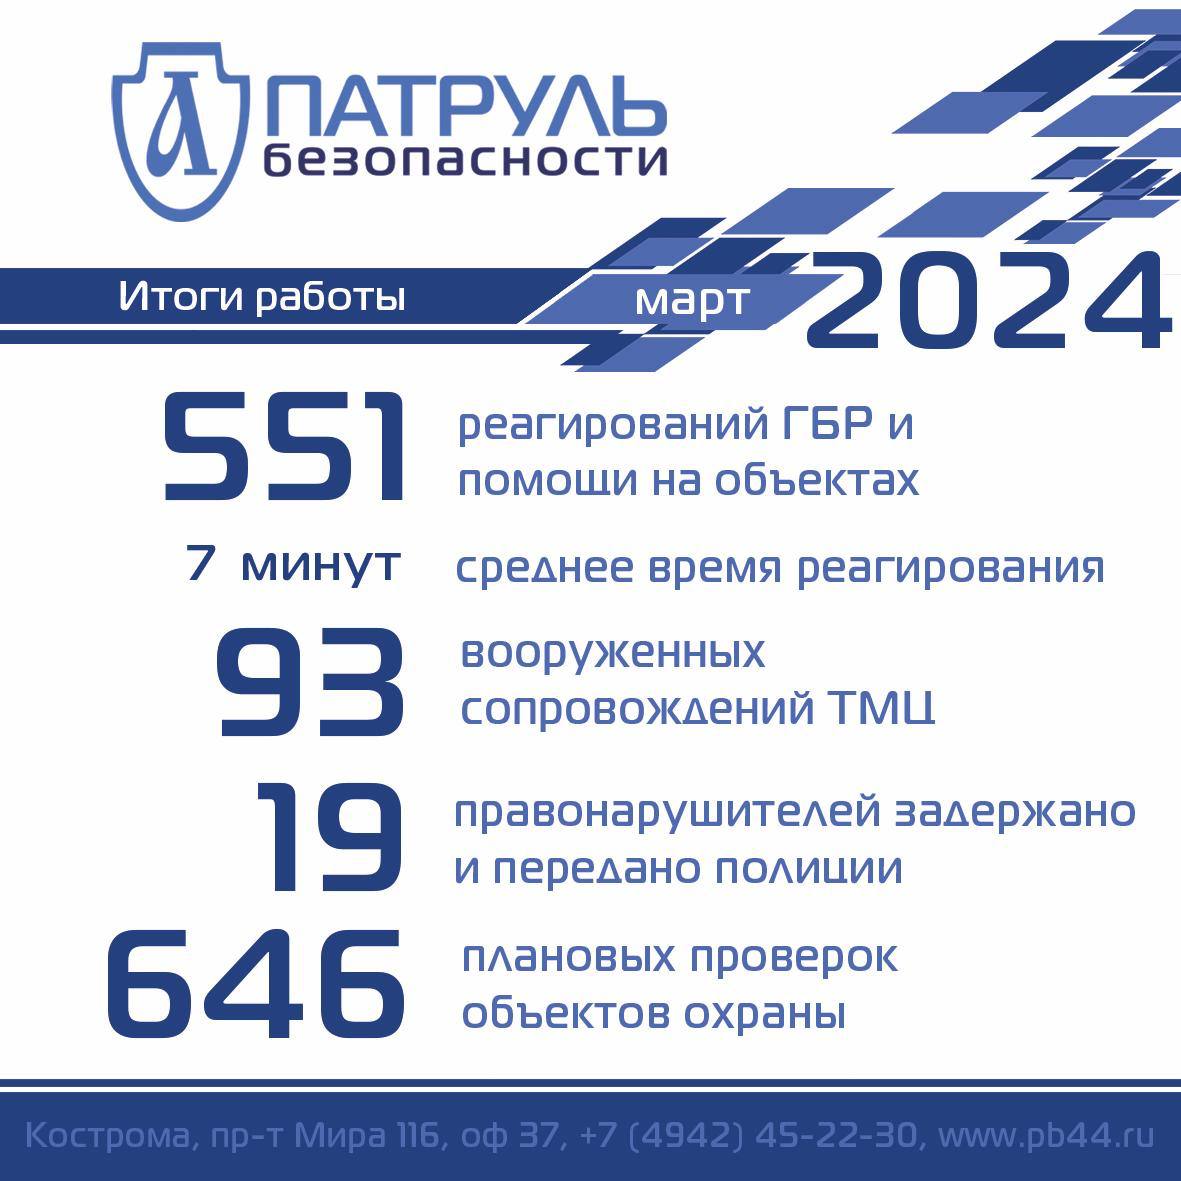 Итоги работы компании "Патруль Безопасности" за март 2024 года в сфере обеспечения безопасности в Костроме и Костромской области